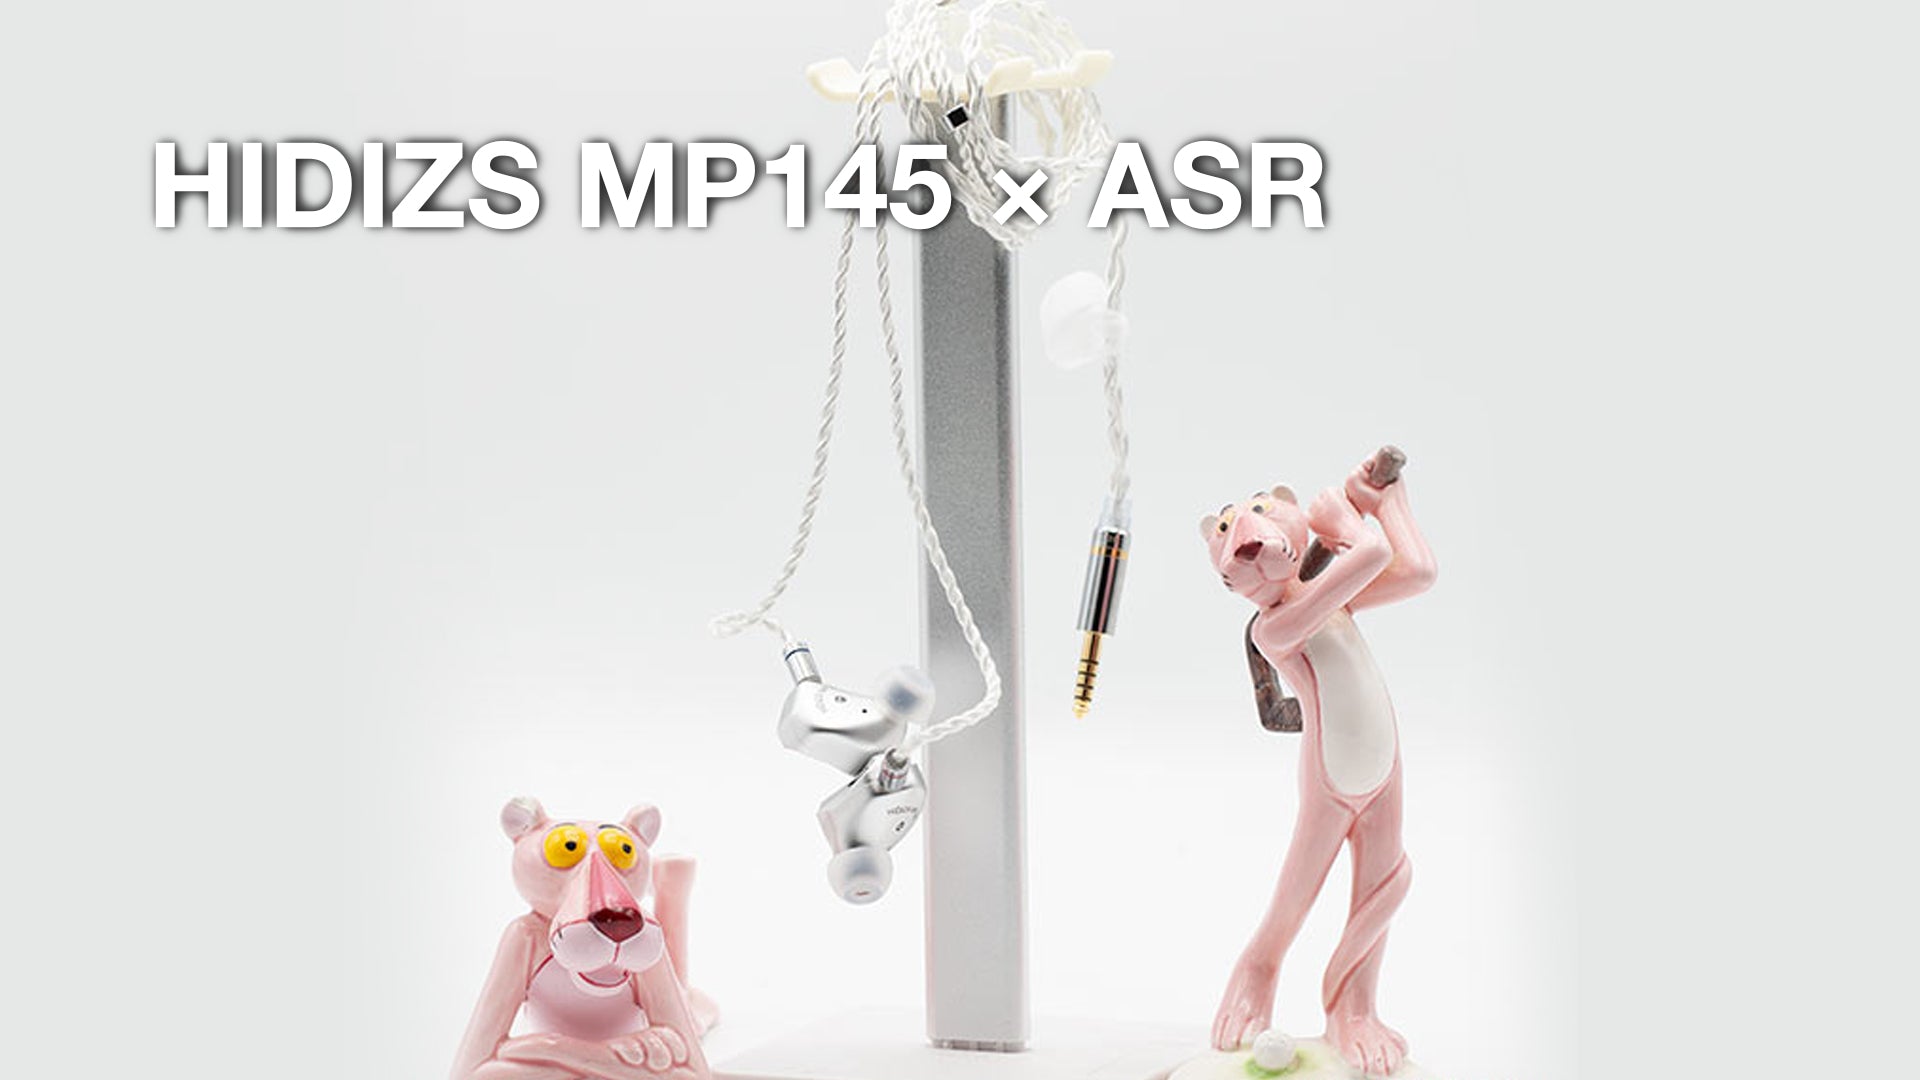 HIDIZS MP145 Review - ASR